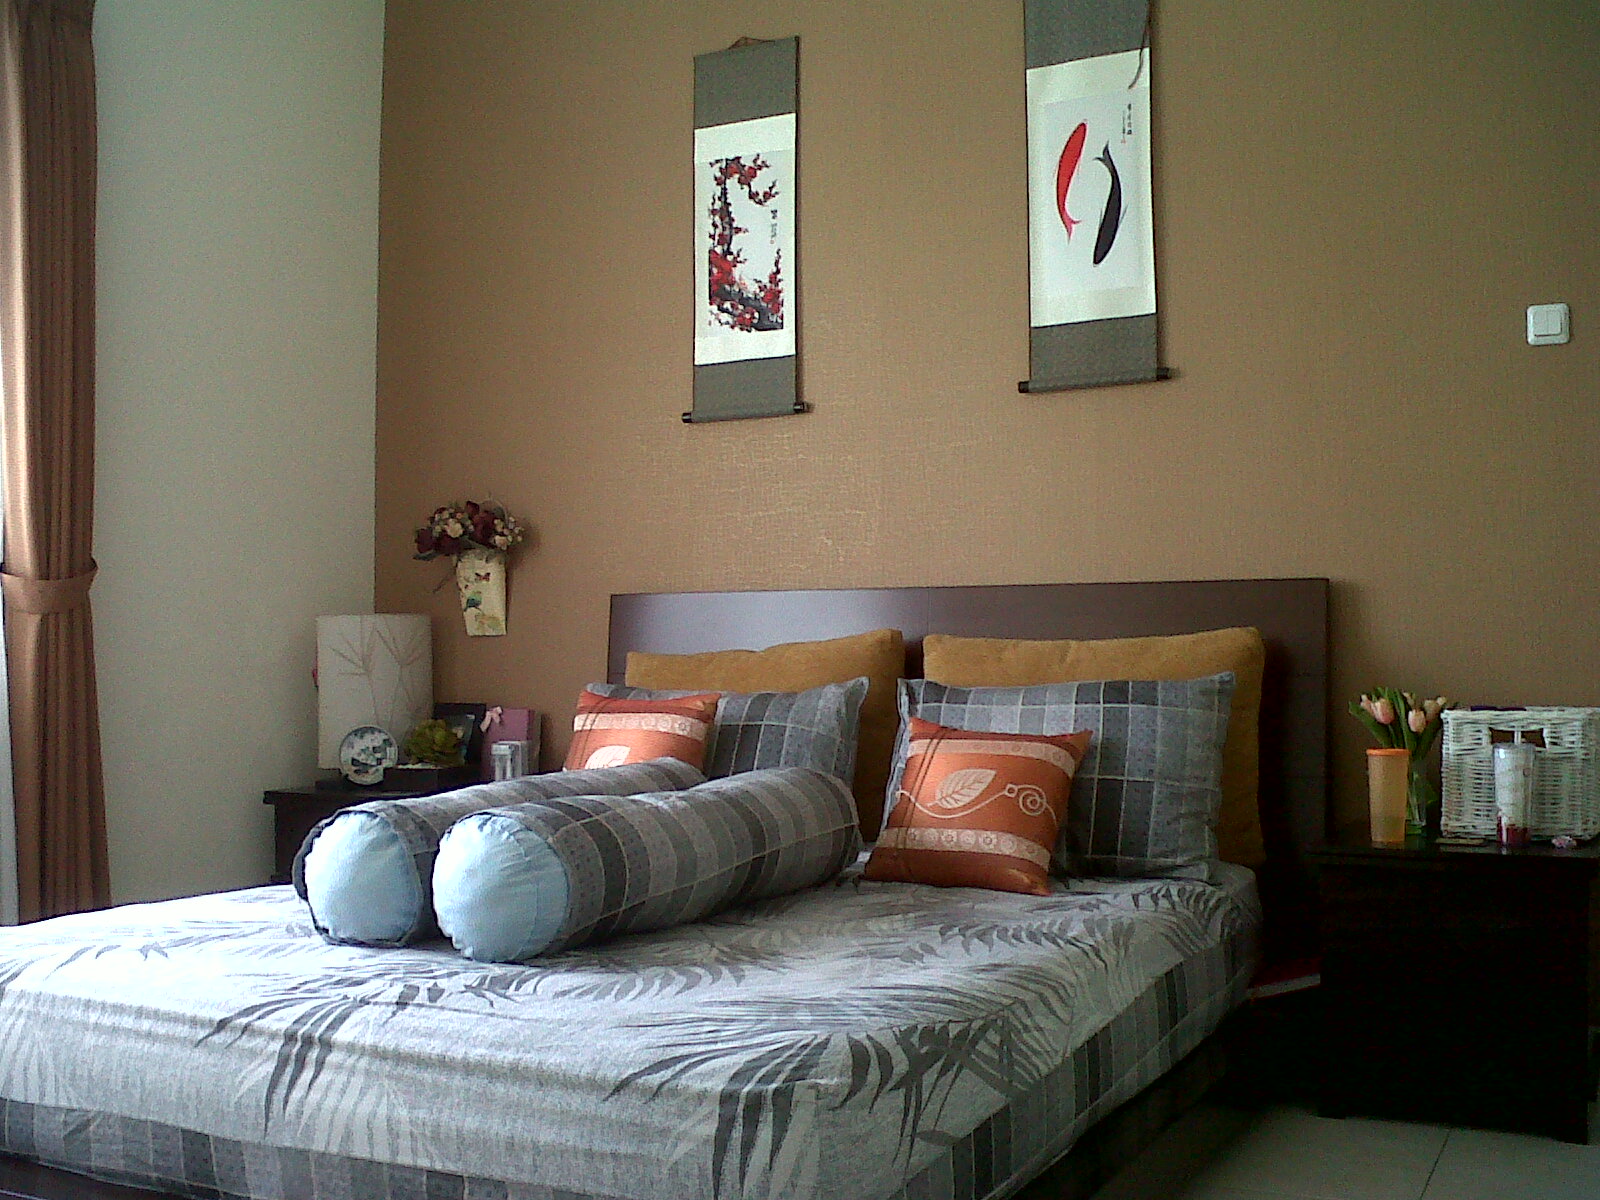 wallpaper warna coklat,bedroom,furniture,bed,room,property